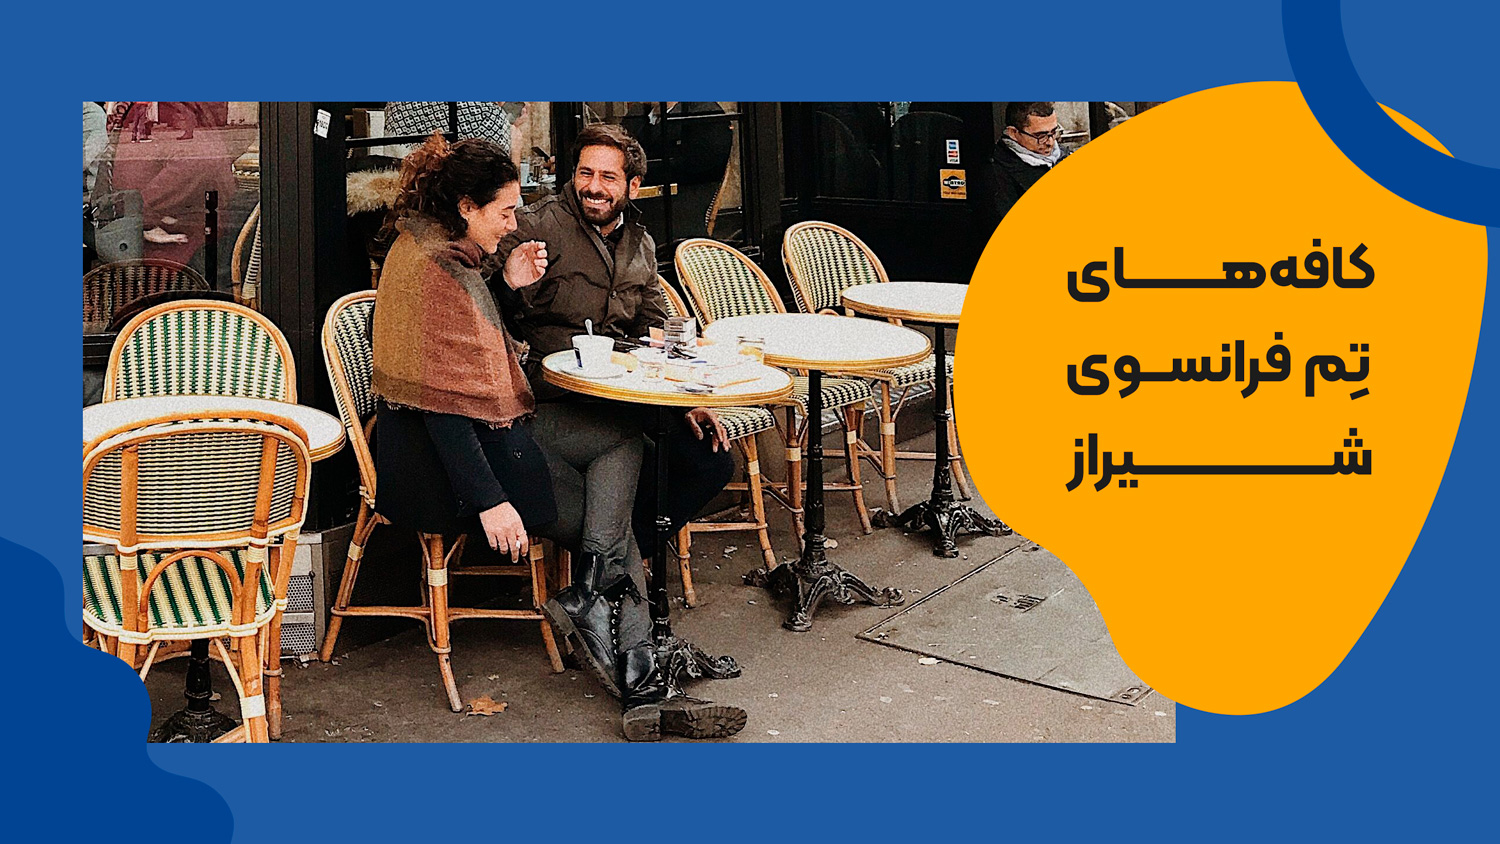 کافه های شیراز با تم فرانسوی